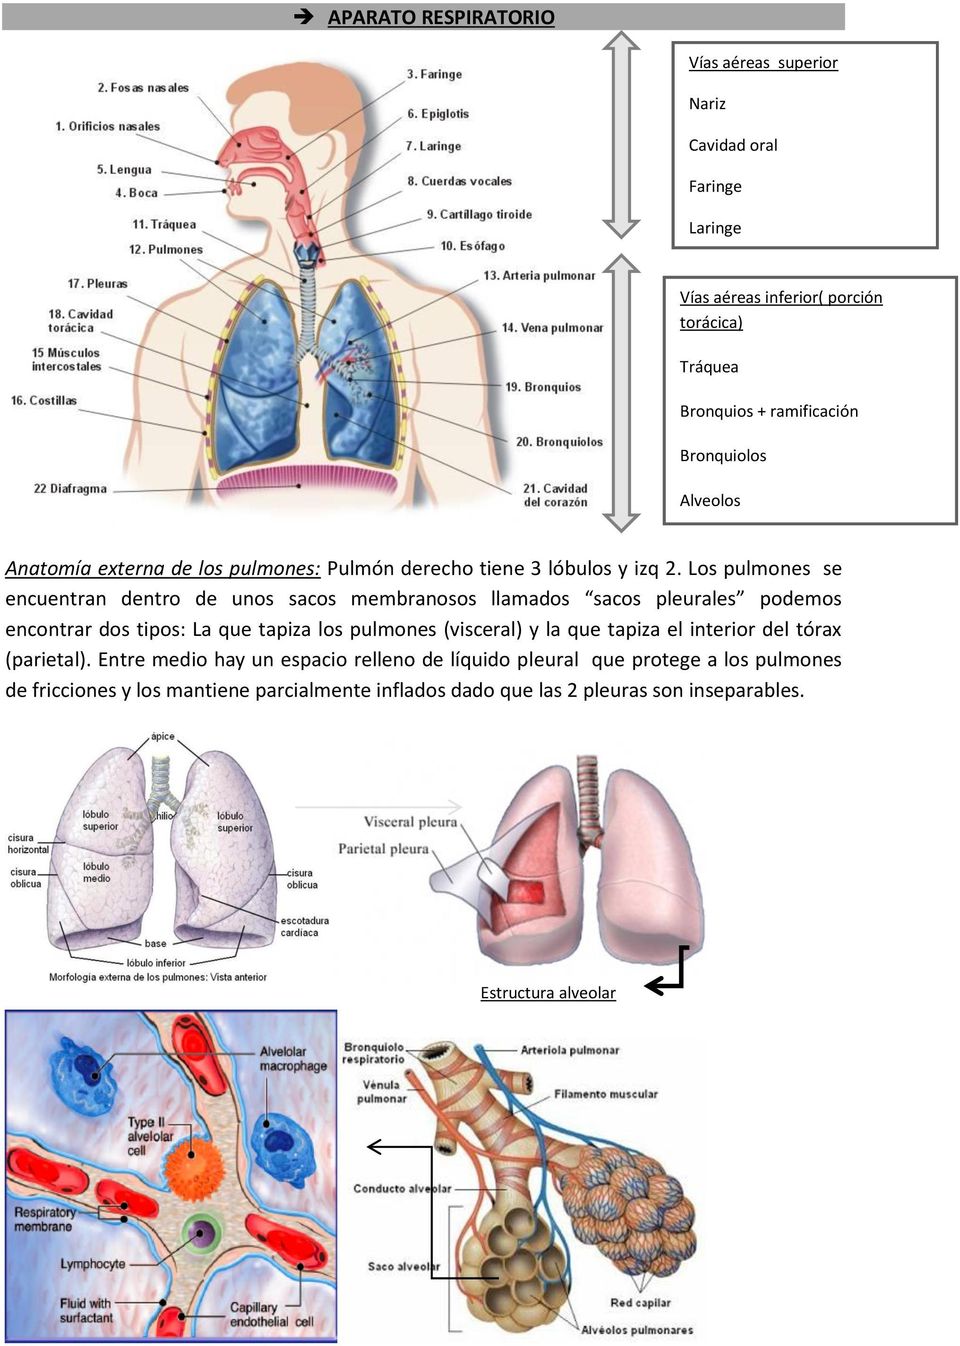 Los pulmones se encuentran dentro de unos sacos membranosos llamados sacos pleurales podemos encontrar dos tipos: La que tapiza los pulmones (visceral) y la